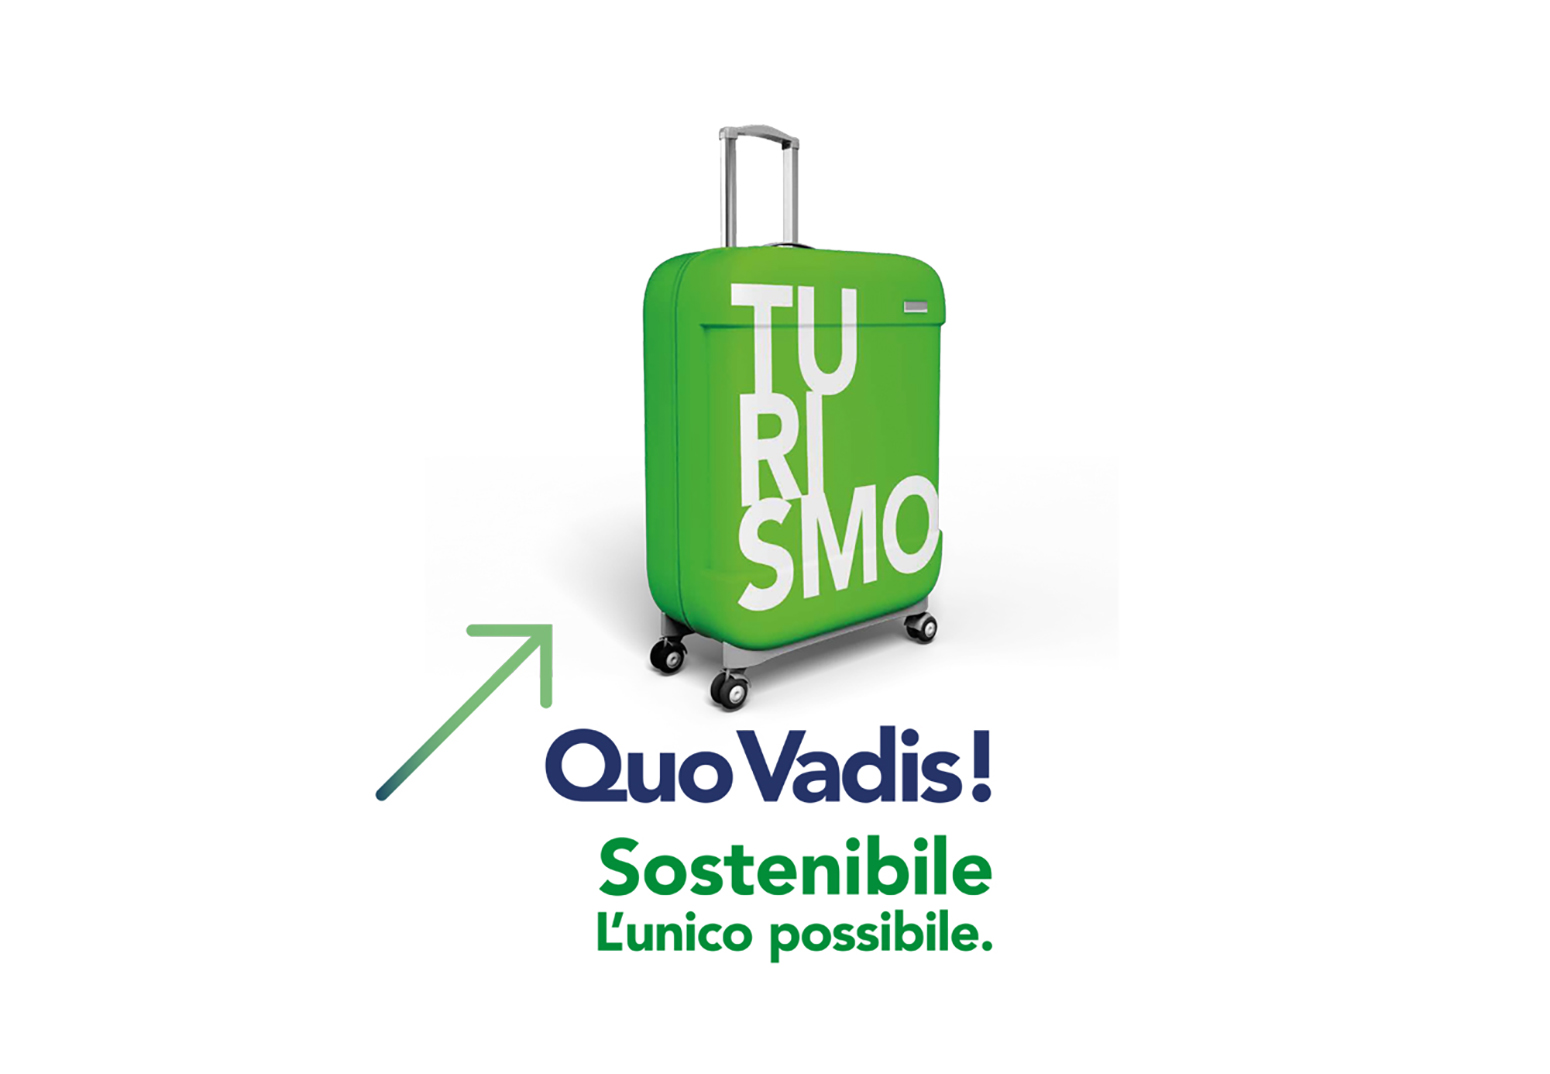 Quo vadis_jesolo_turismo sostenibile